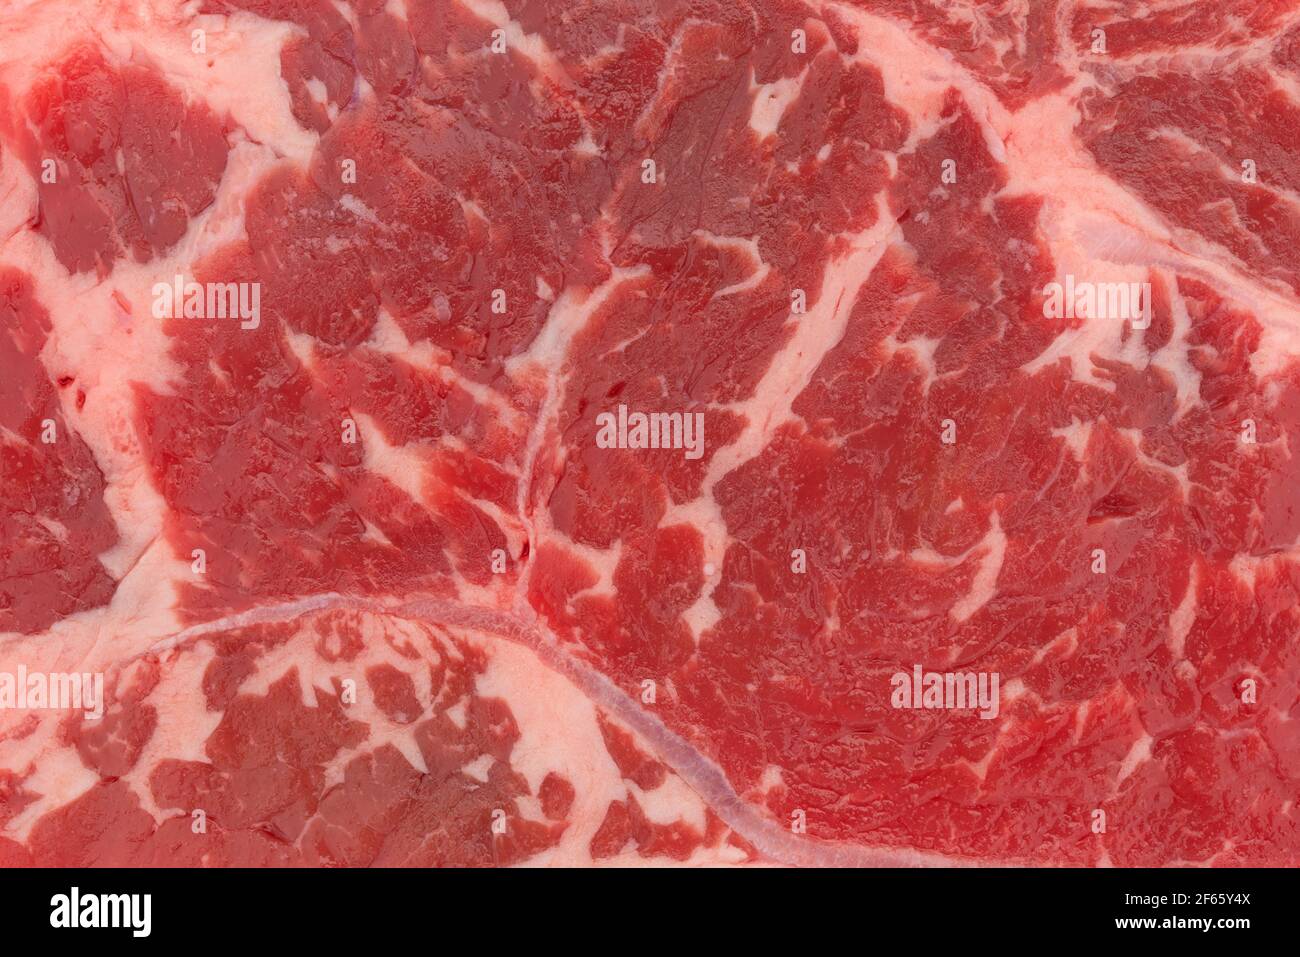 Rindslende ohne Knochen am Ende geschnitten Streifen Steak aus der Nähe. Stockfoto